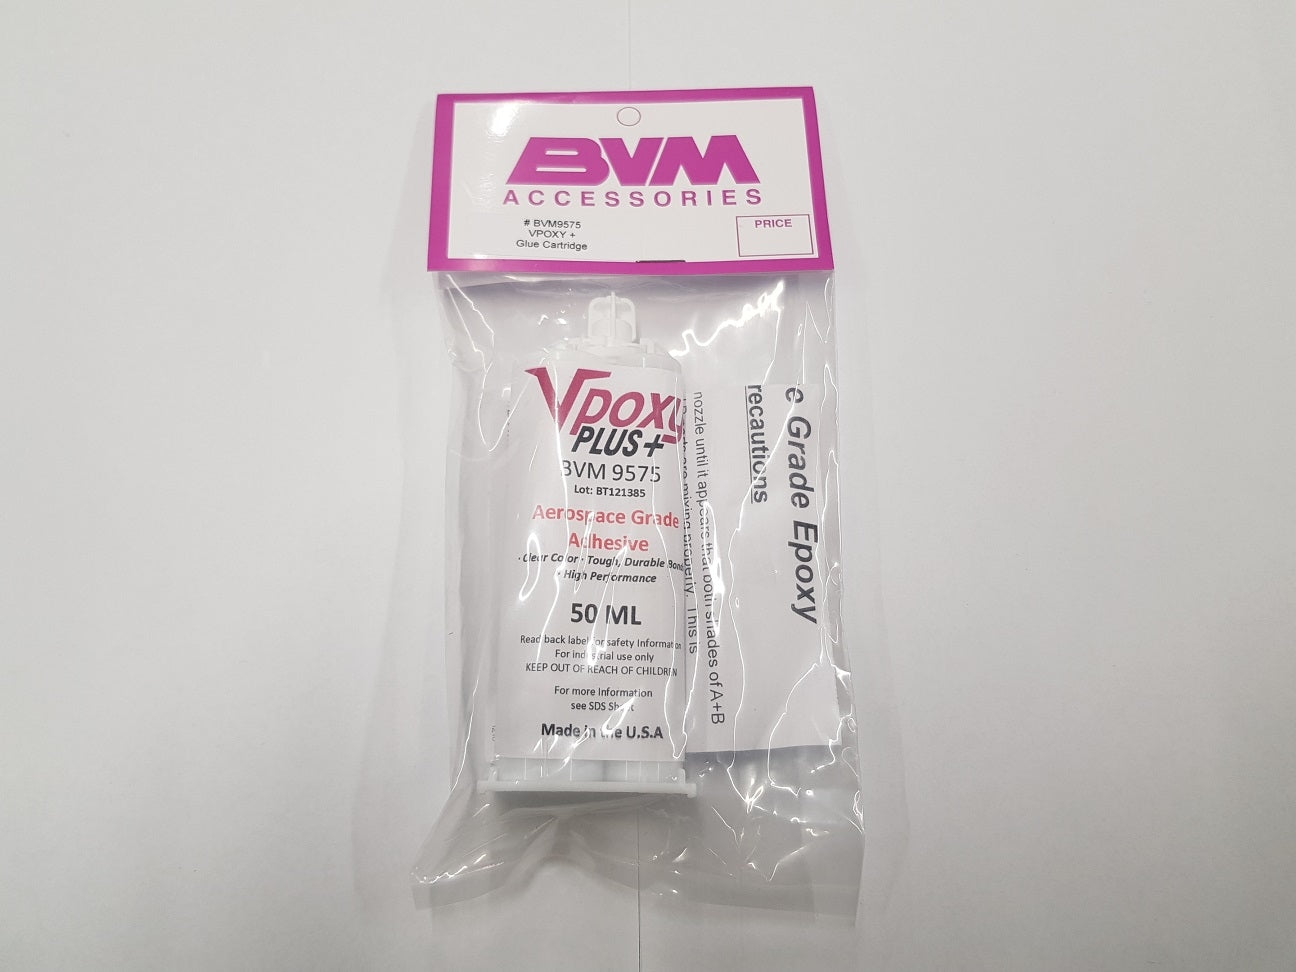 BVM Vpoxy Glue Cartridge BVM9575